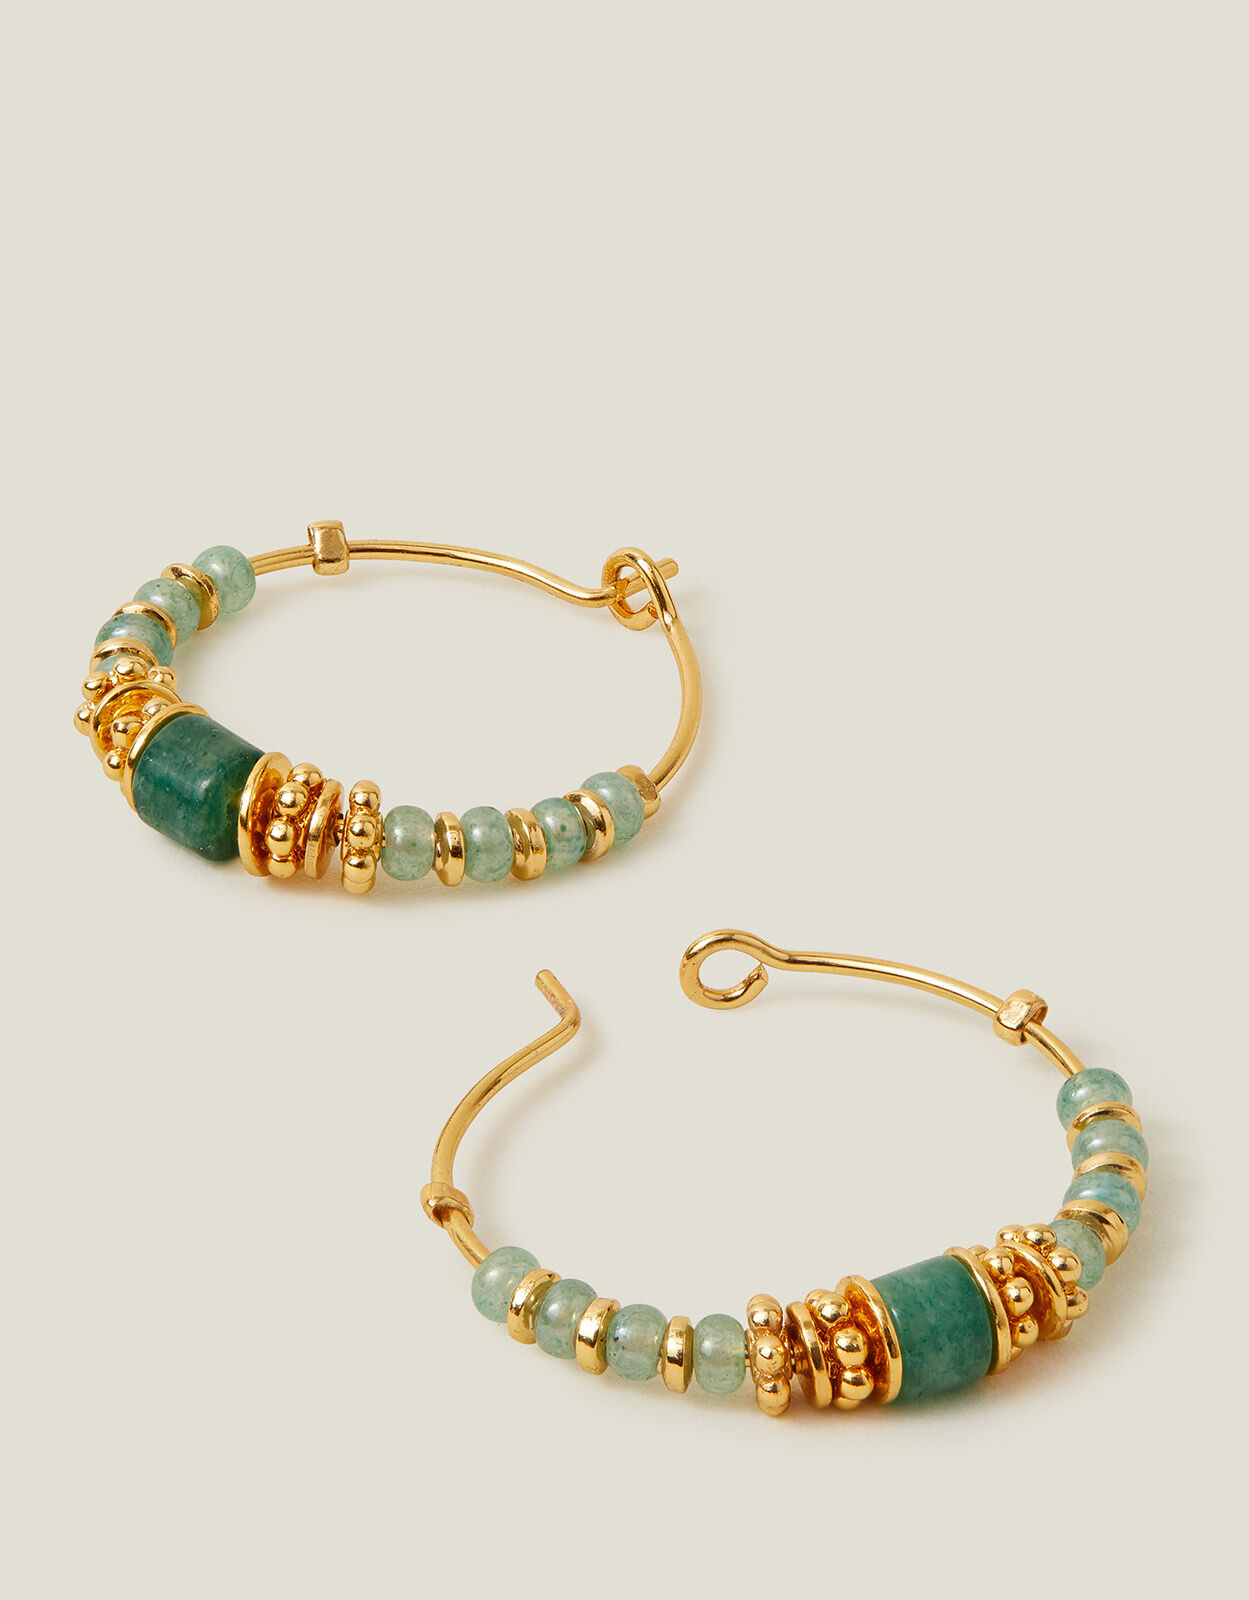 Buy Red Coral earrings, Sterling silver earrings, Oval gemstone earrings  online at aStudio1980.com